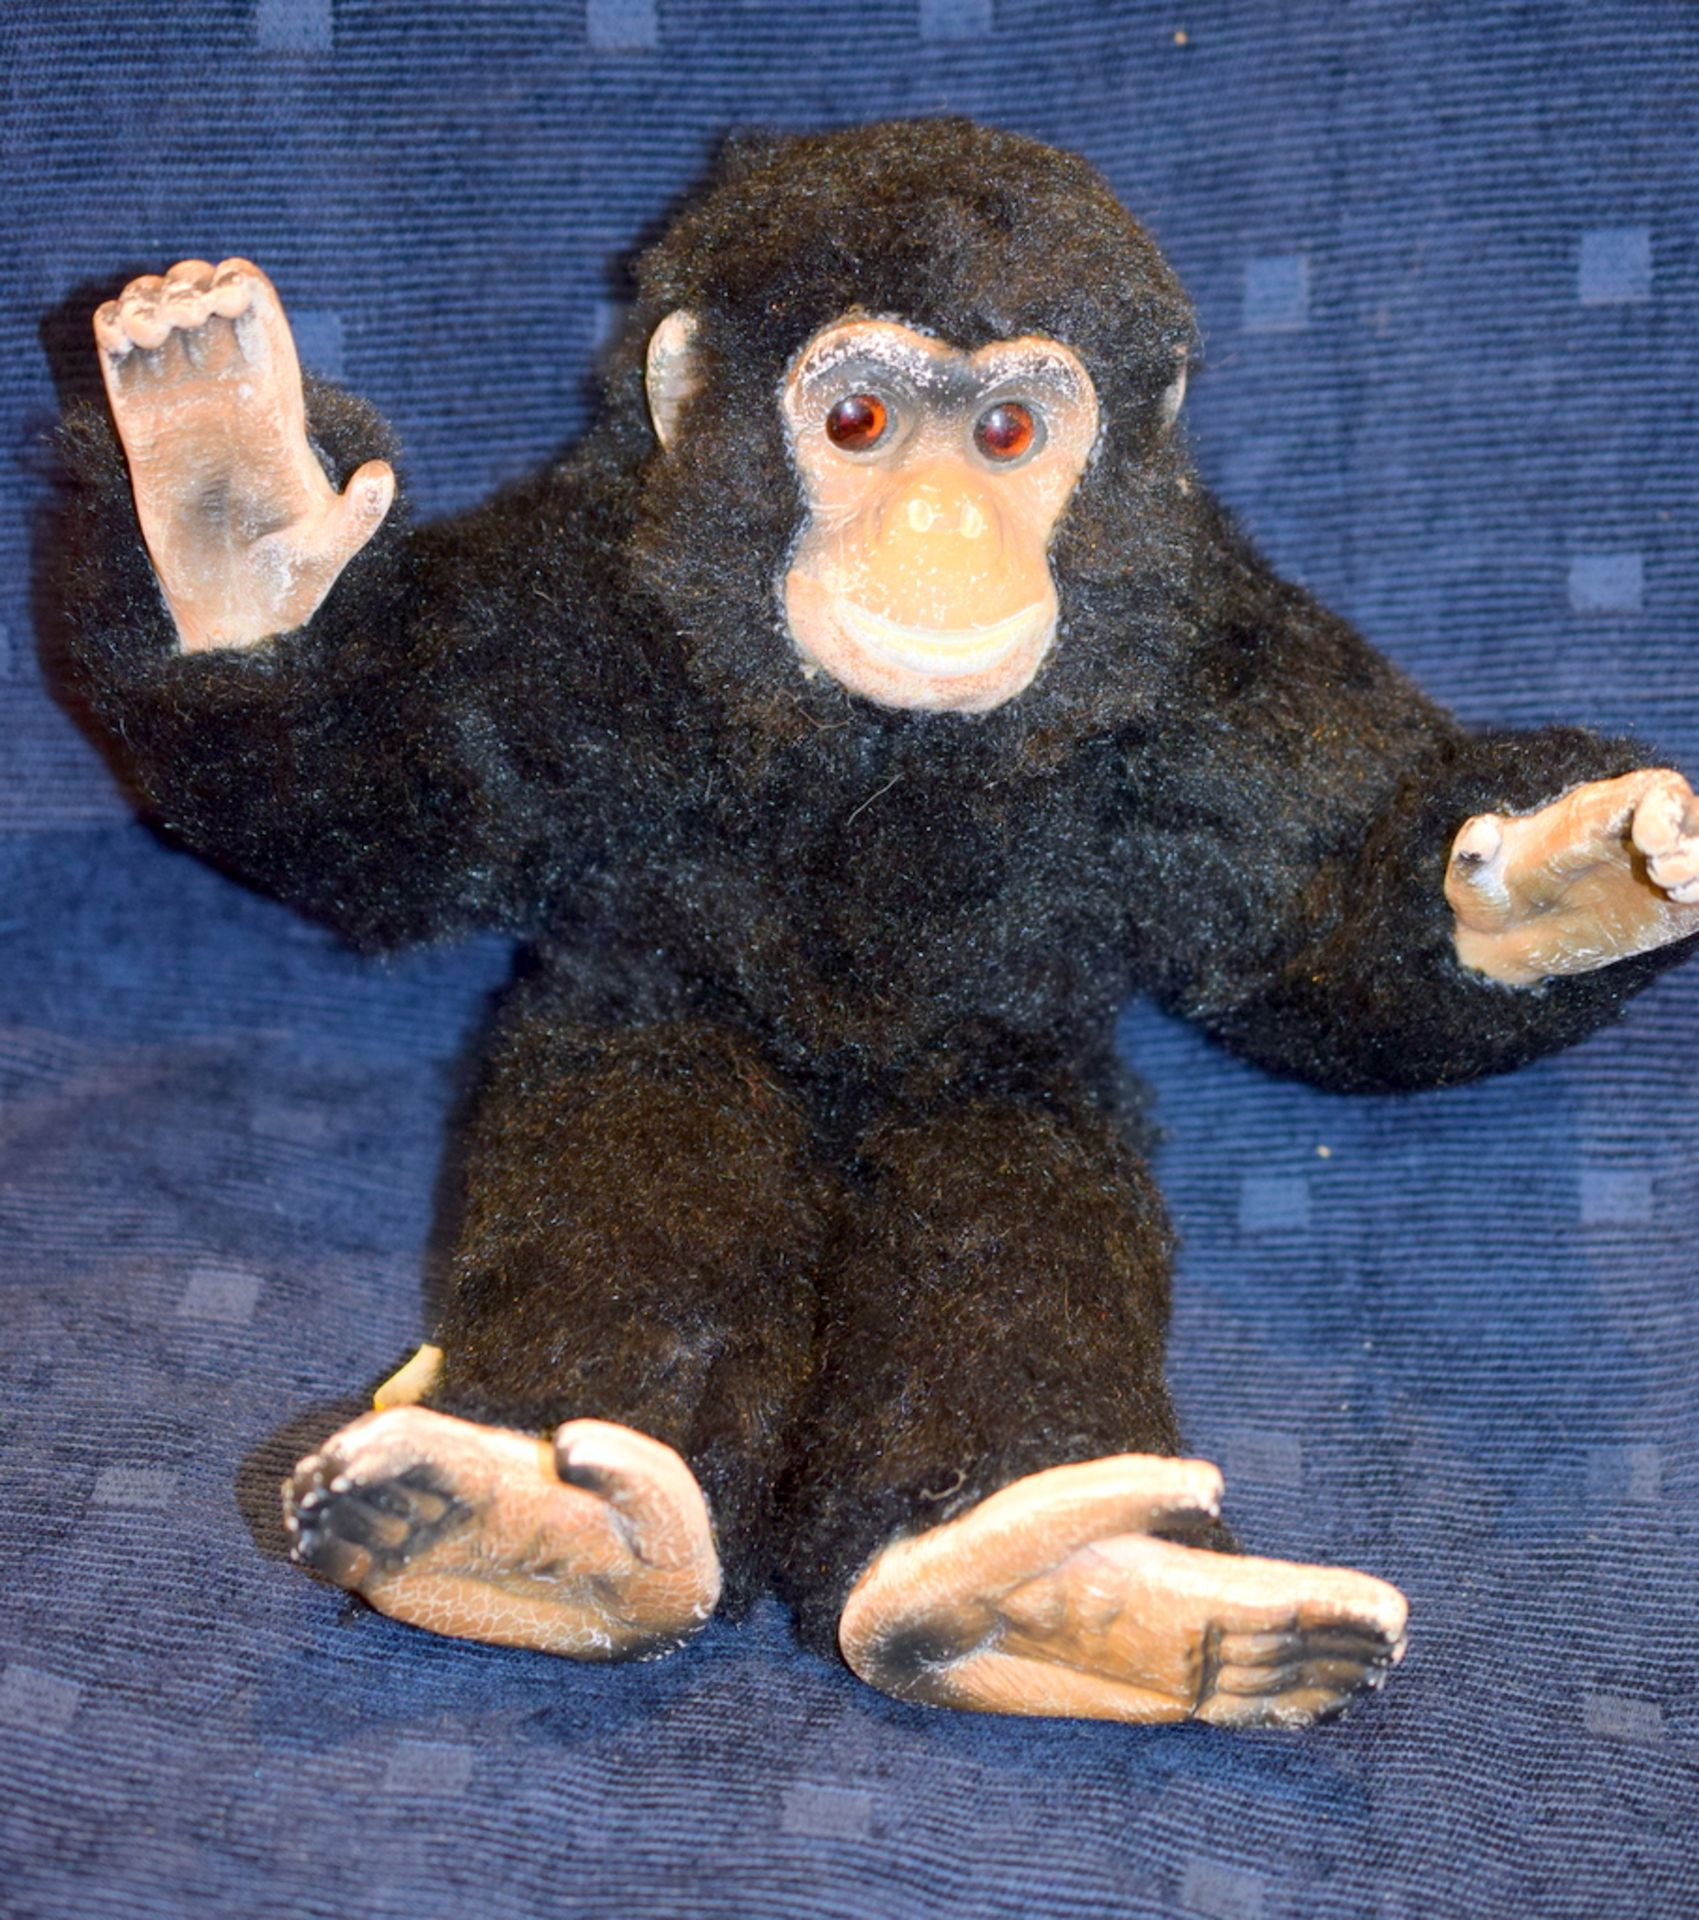 Deans Childsplay Toy Monkey